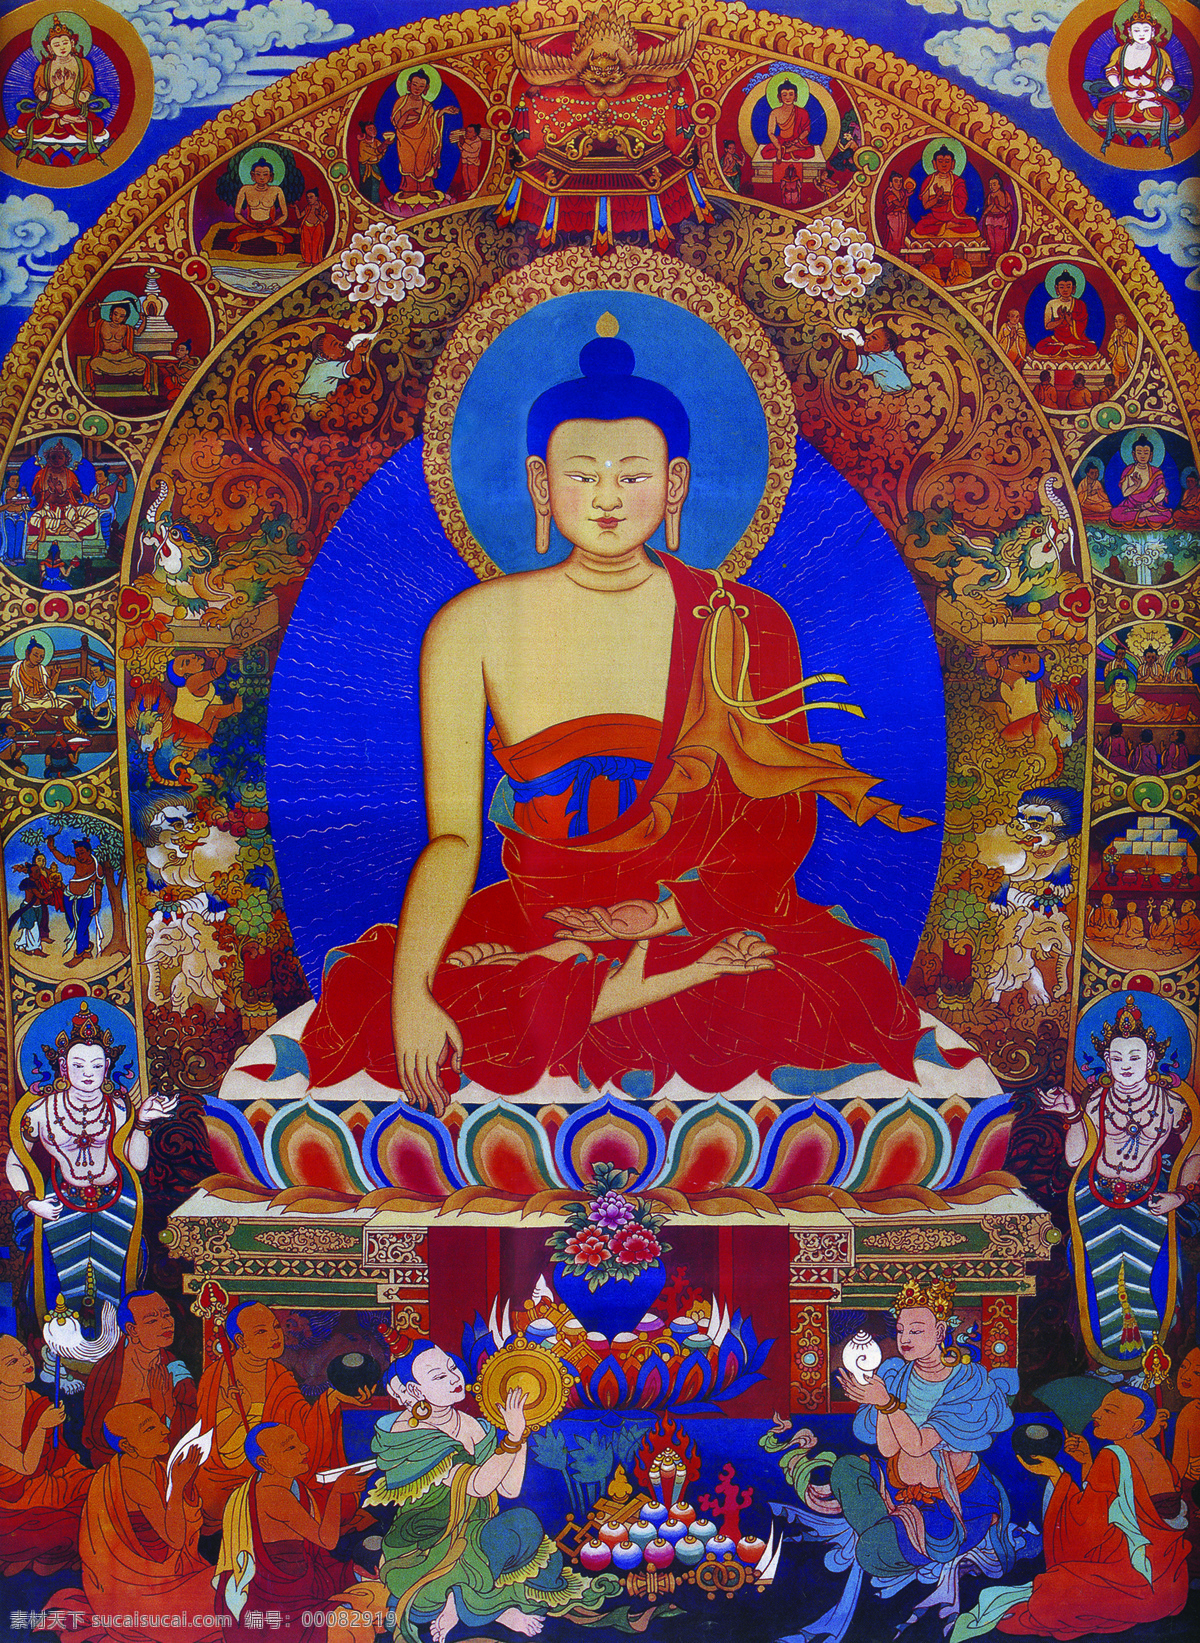 藏传佛教 佛 佛教 工艺 花纹 绘画 绘画书法 民族 唐卡 宗教 宗教信仰 菩萨 西藏 艺术 文化艺术 释迦牟尼